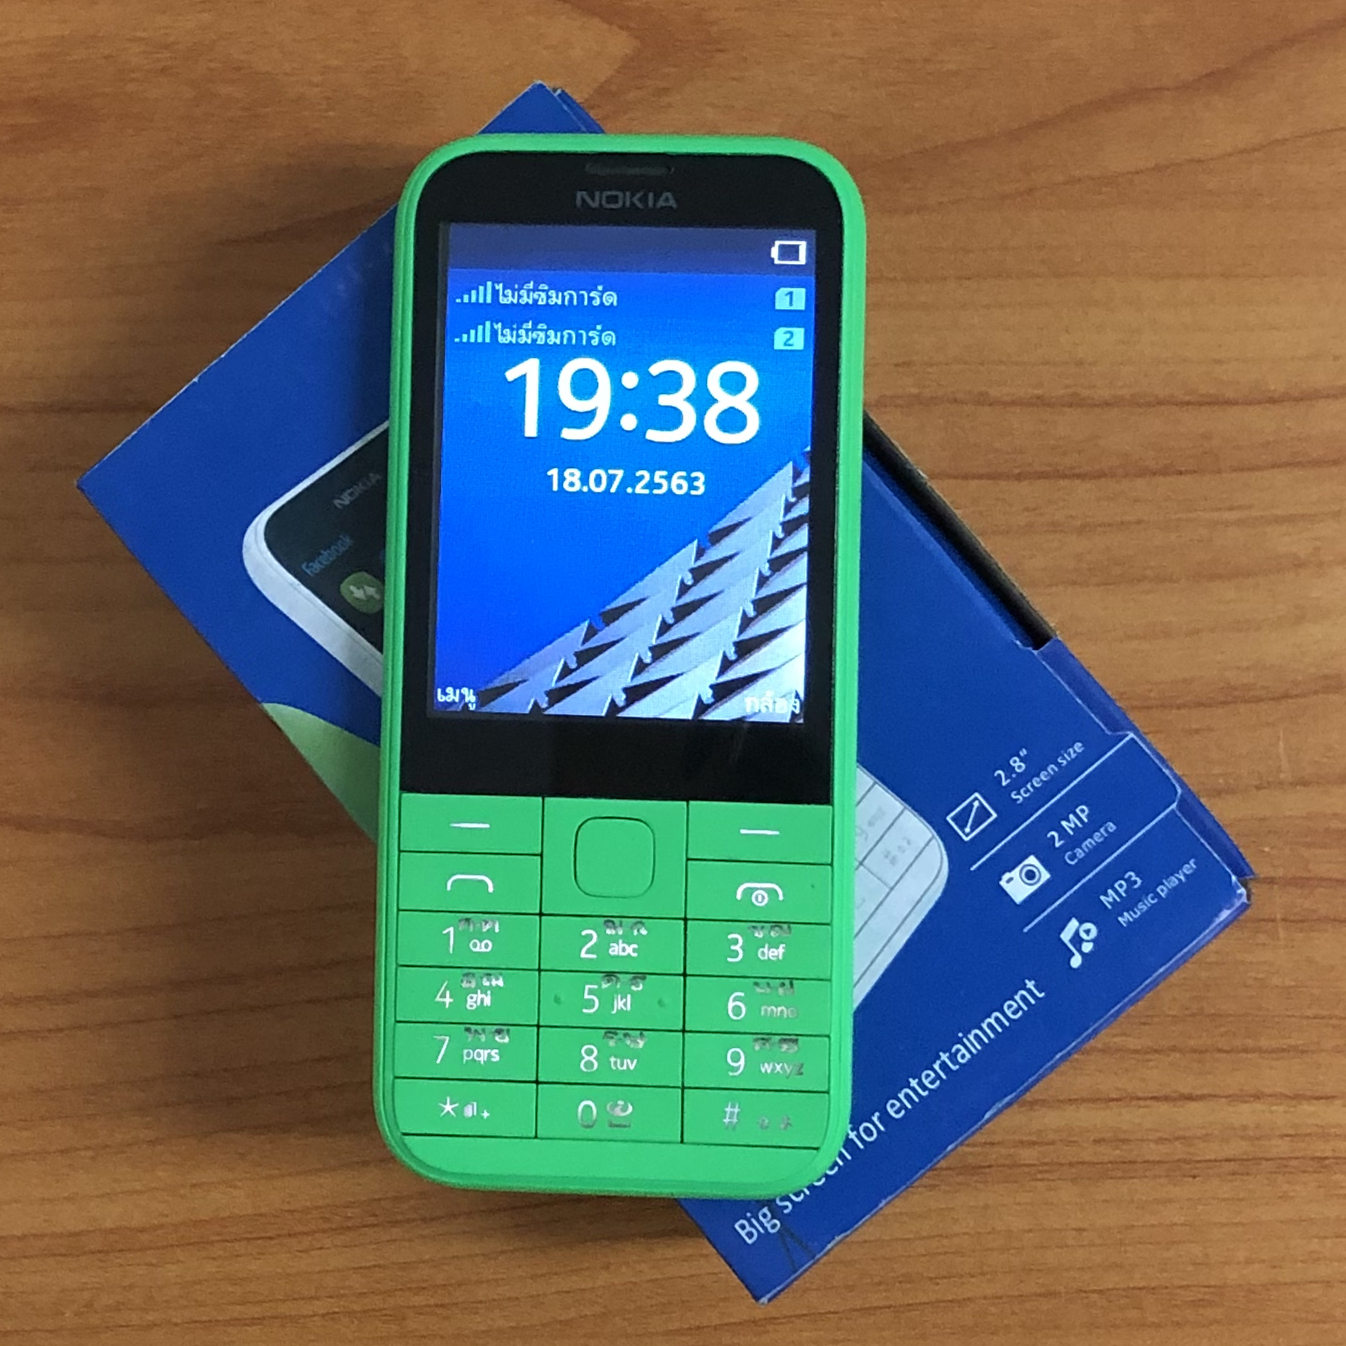 โทรศัพท์มือถือ Nokia 225 หน้าจอ 2.8 นิ้ว ปุ่มกดไทย เมนูไทย สามารถใส่ซิม AIS TRUE 4G ได้ เสียงดังด้วยปุ่มขนาดใหญ่